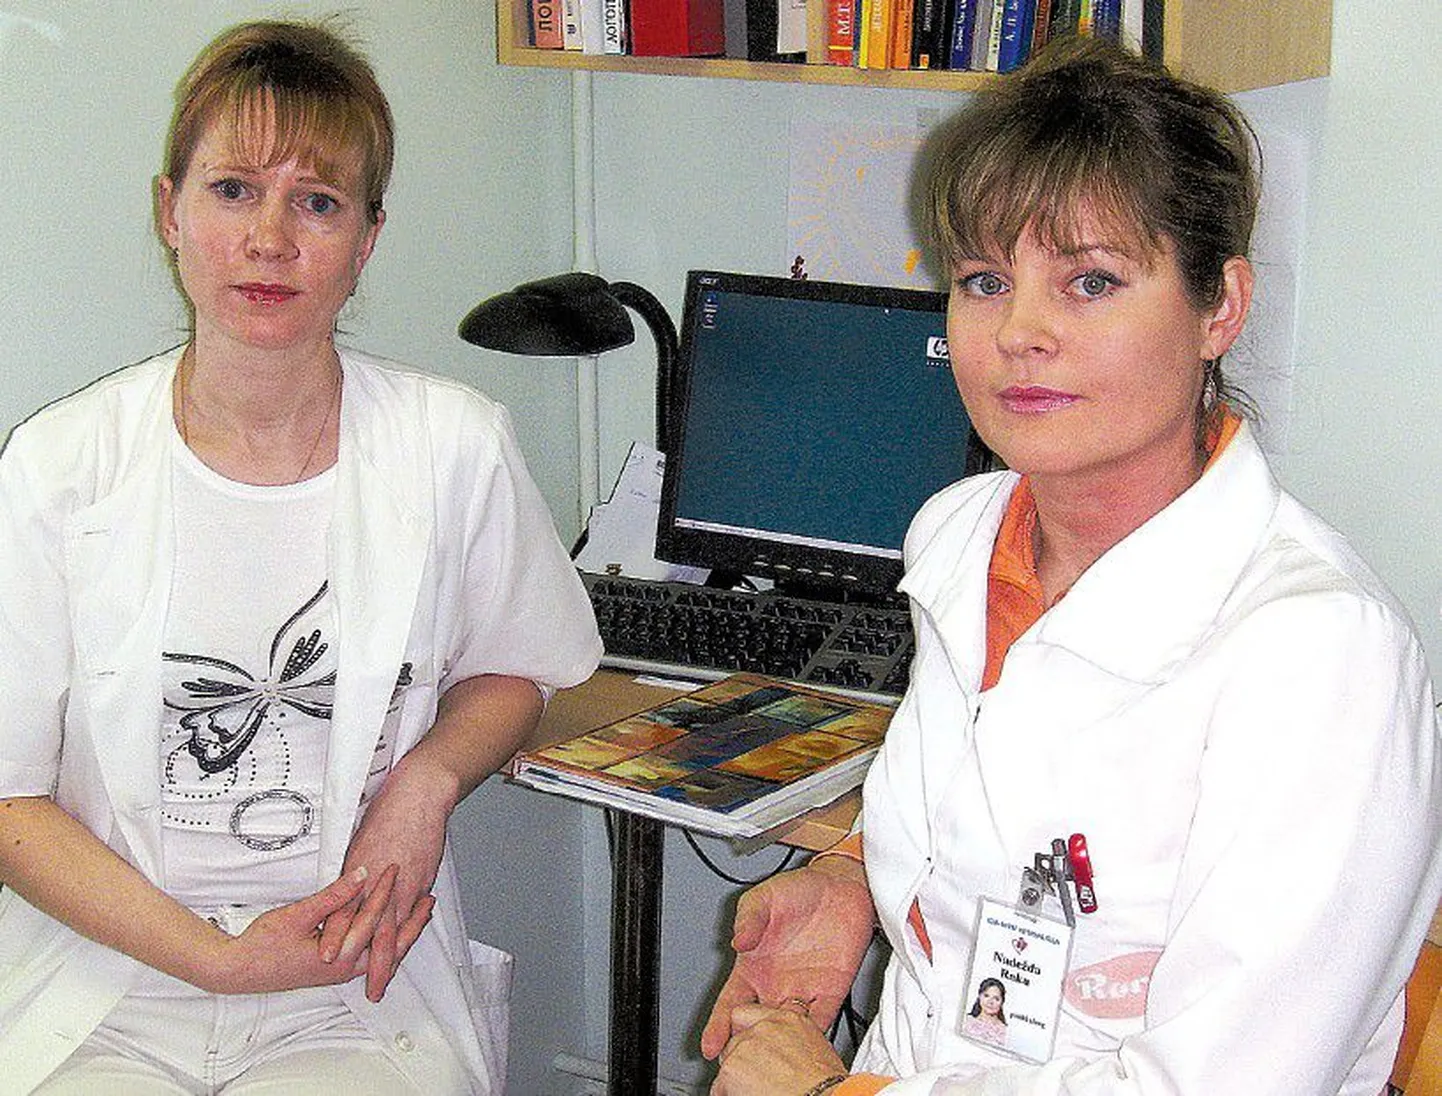 Психолог Ида-Вируской центральной больницы Надежда Раку (справа) осталась довольна командировкой в Тарту, ее коллега Элена Малетина (слева) сейчас активно изучает эстонский язык, и не исключено, что она тоже примет участие в программе.